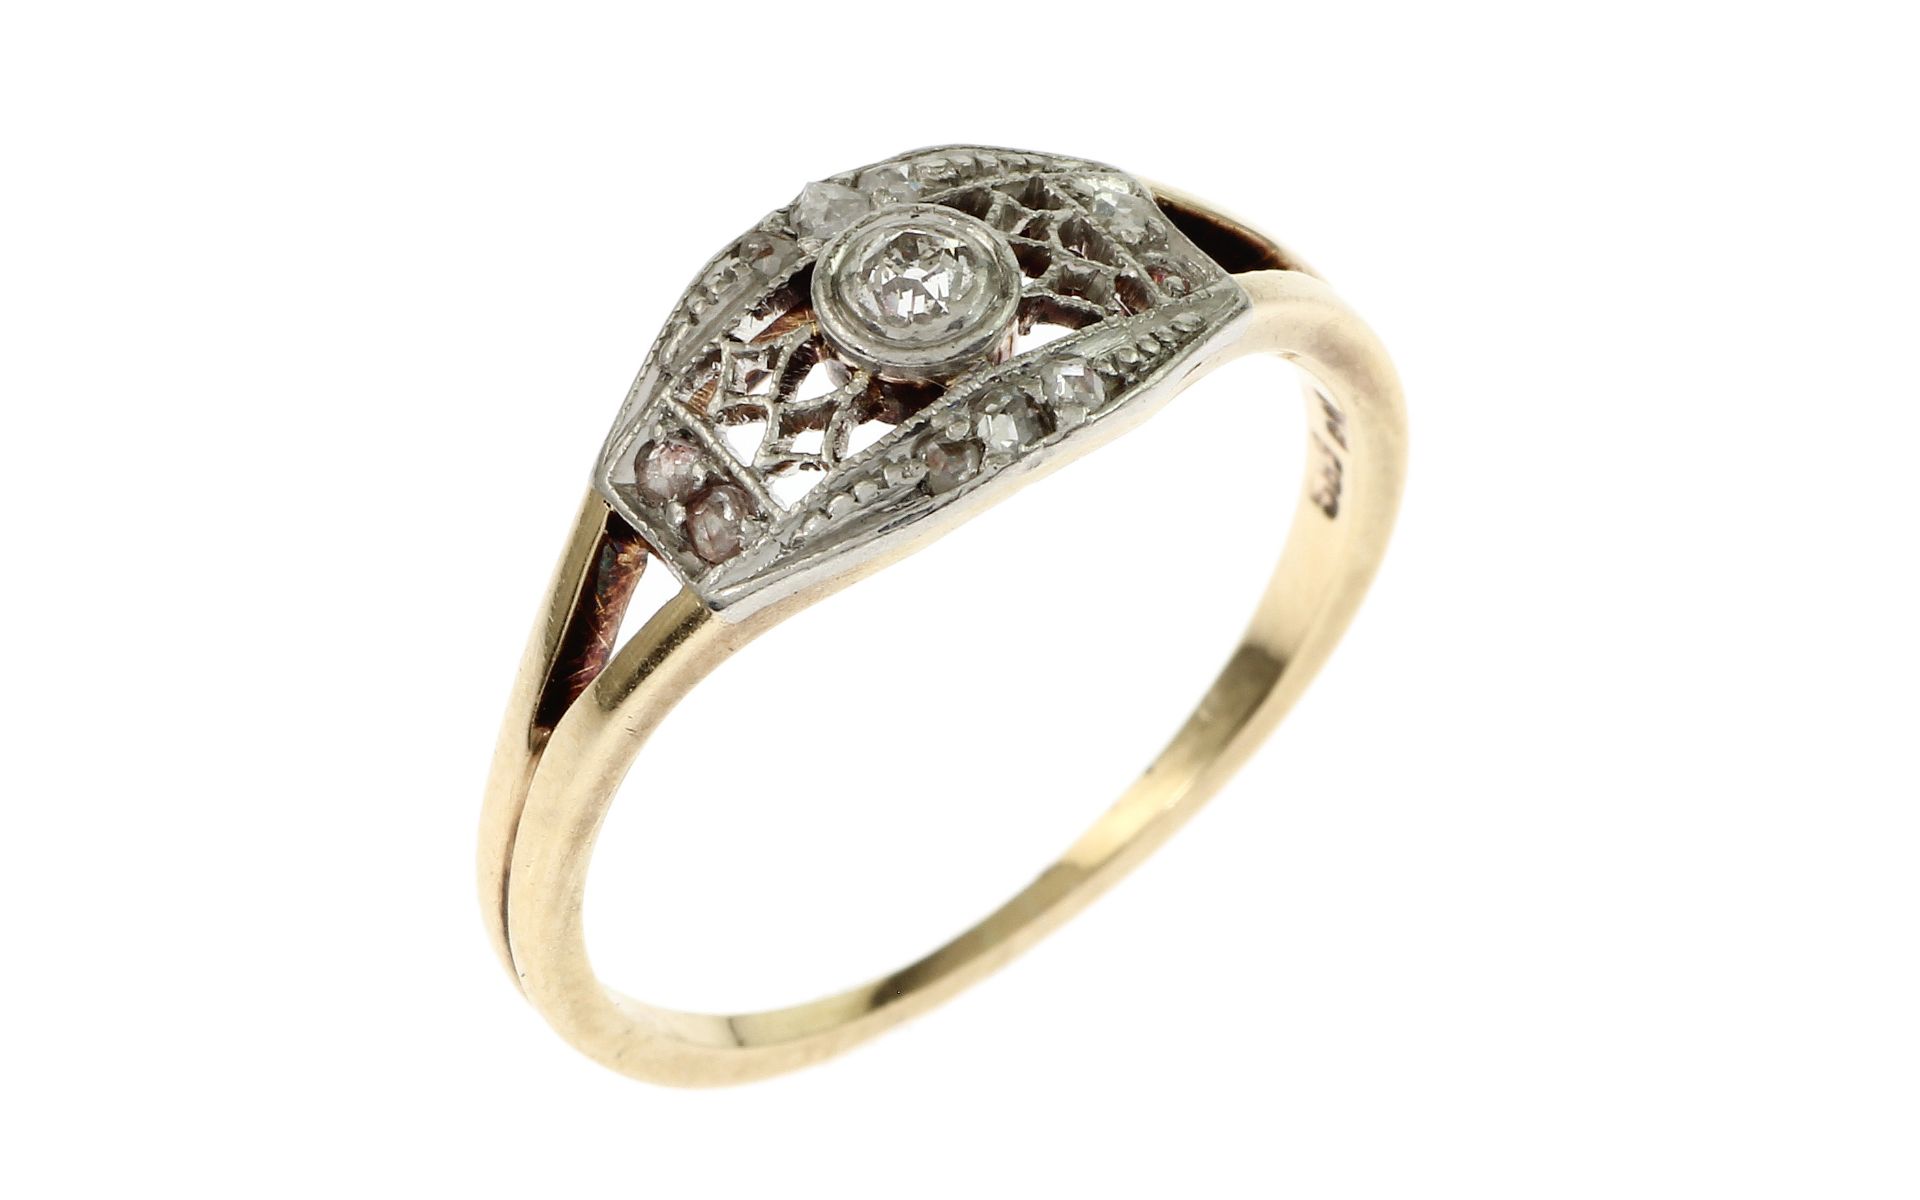 Ring 2.38g 585/- Gelbgold und Weissgold mit 10 Diamanten Rosenschliff. 1 Diamant fehlt. Ringgroesse 